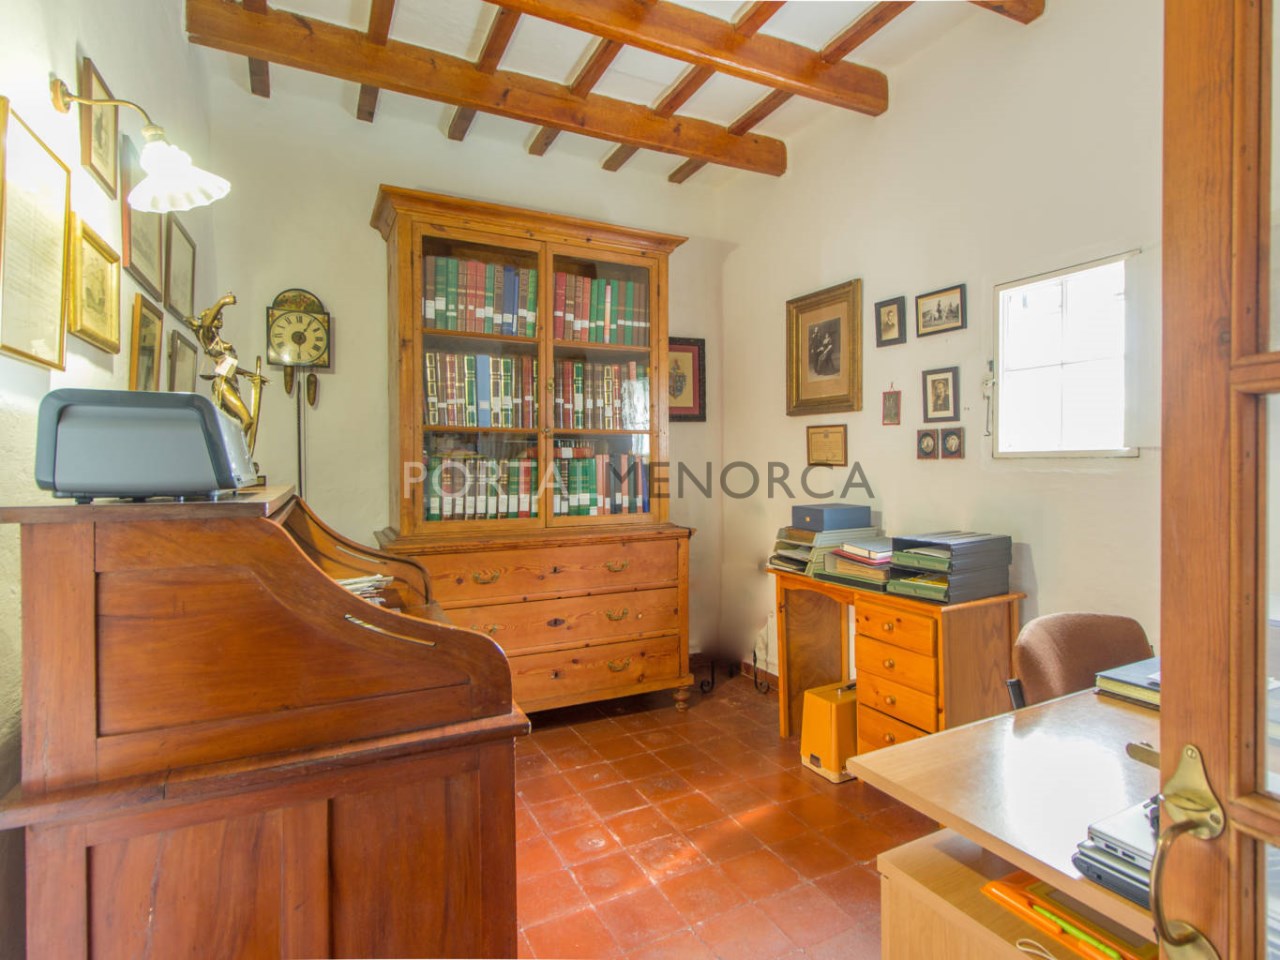 Casa de campo en venta en Menorca - Planta baja (6)